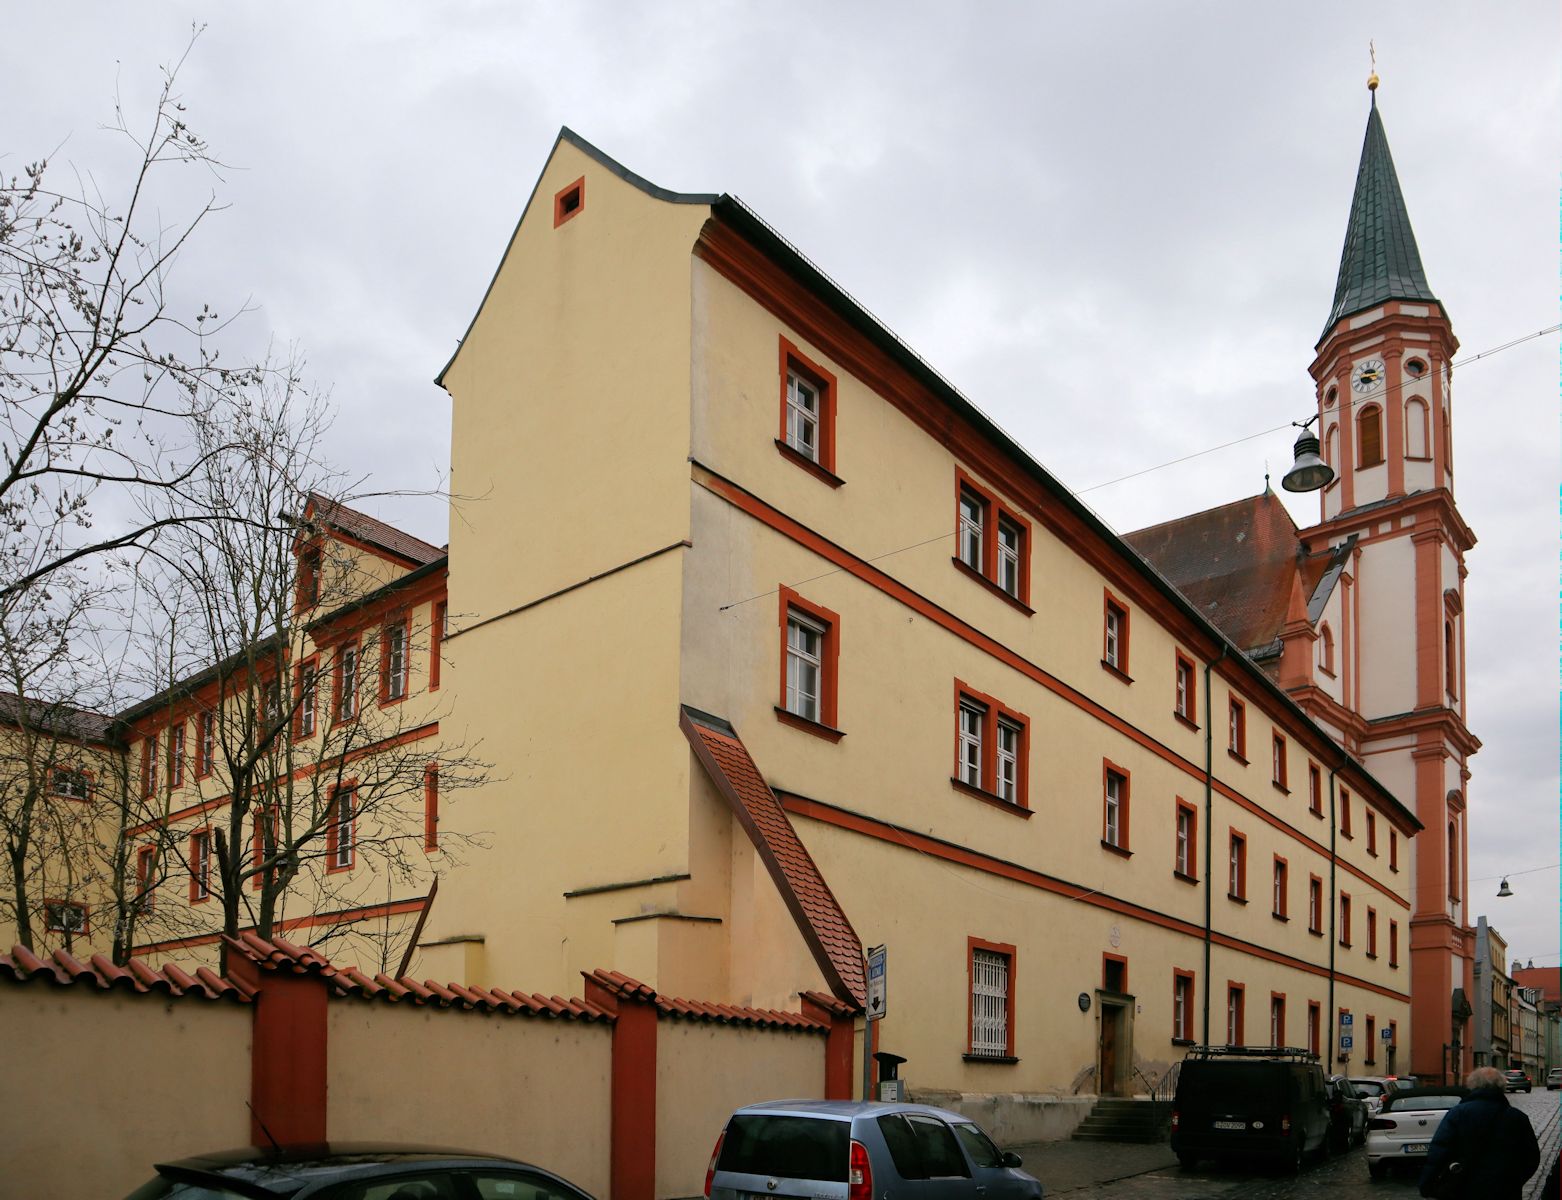 Kloster der Karmeliten in Straubing